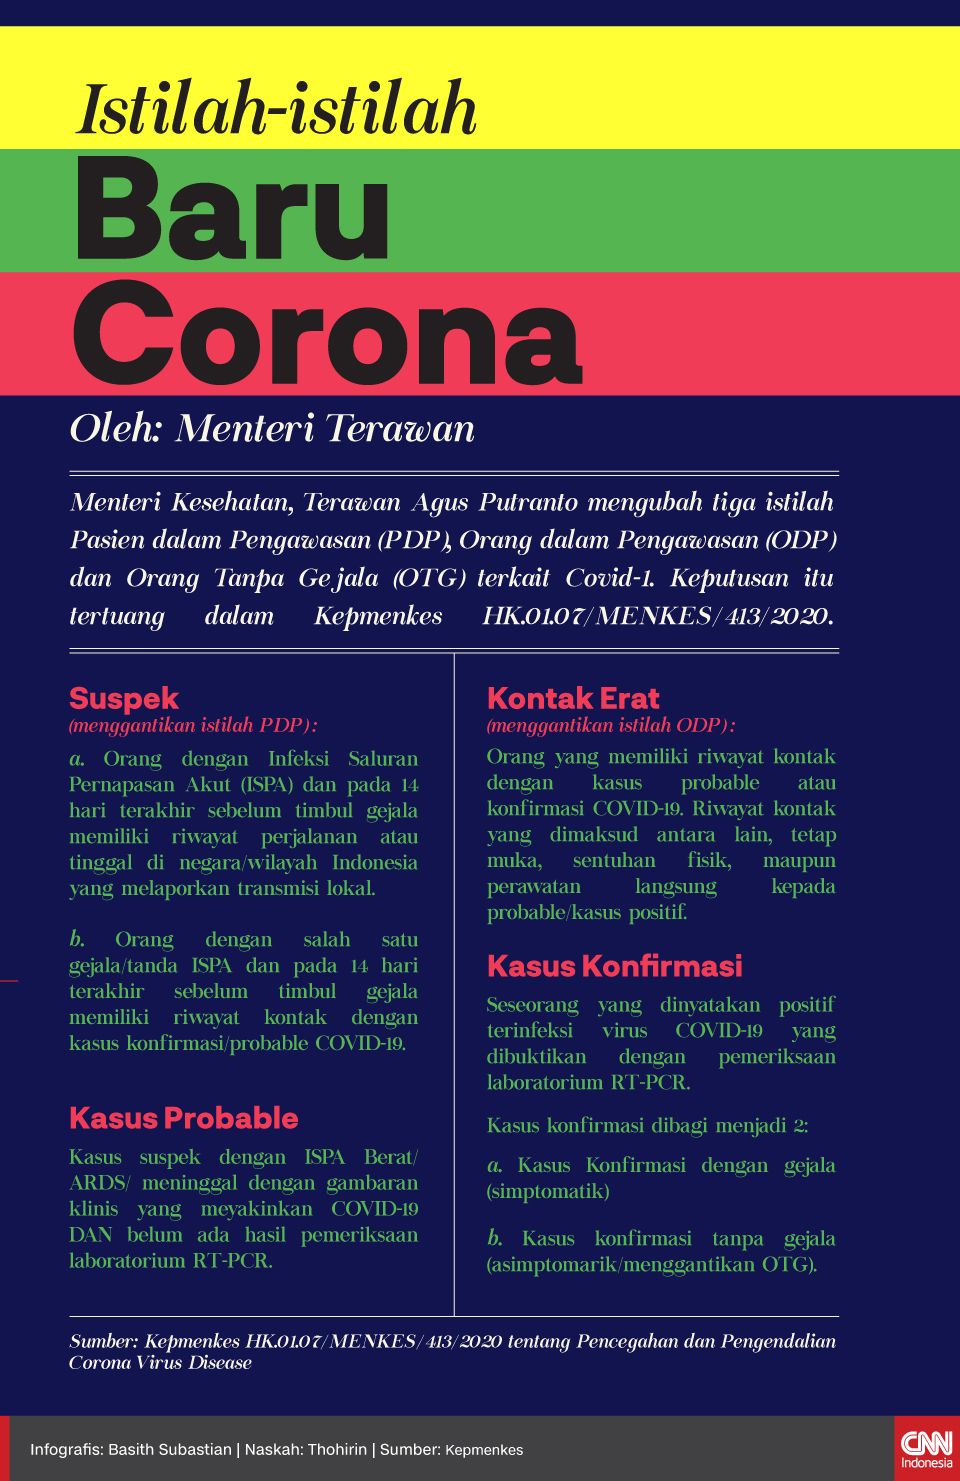 Infografis Istilah-istilah Corona Baru dari Menteri Terawan